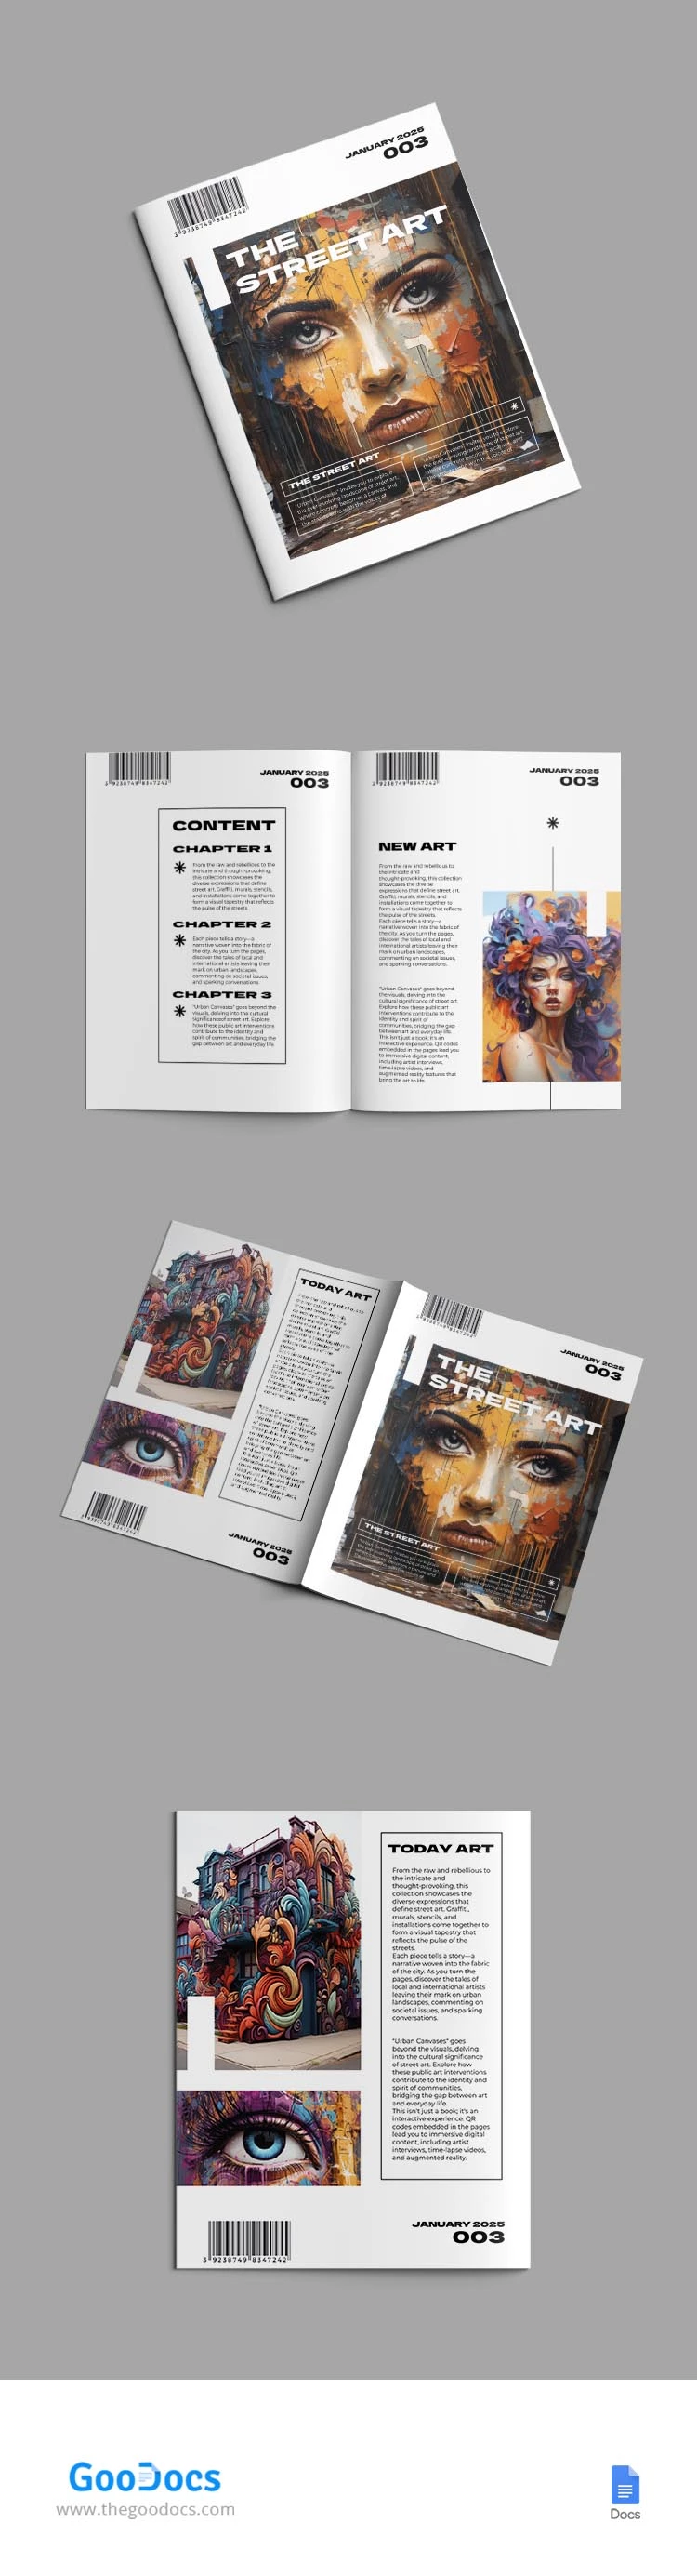 Libro d'arte estetica - free Google Docs Template - 10067470